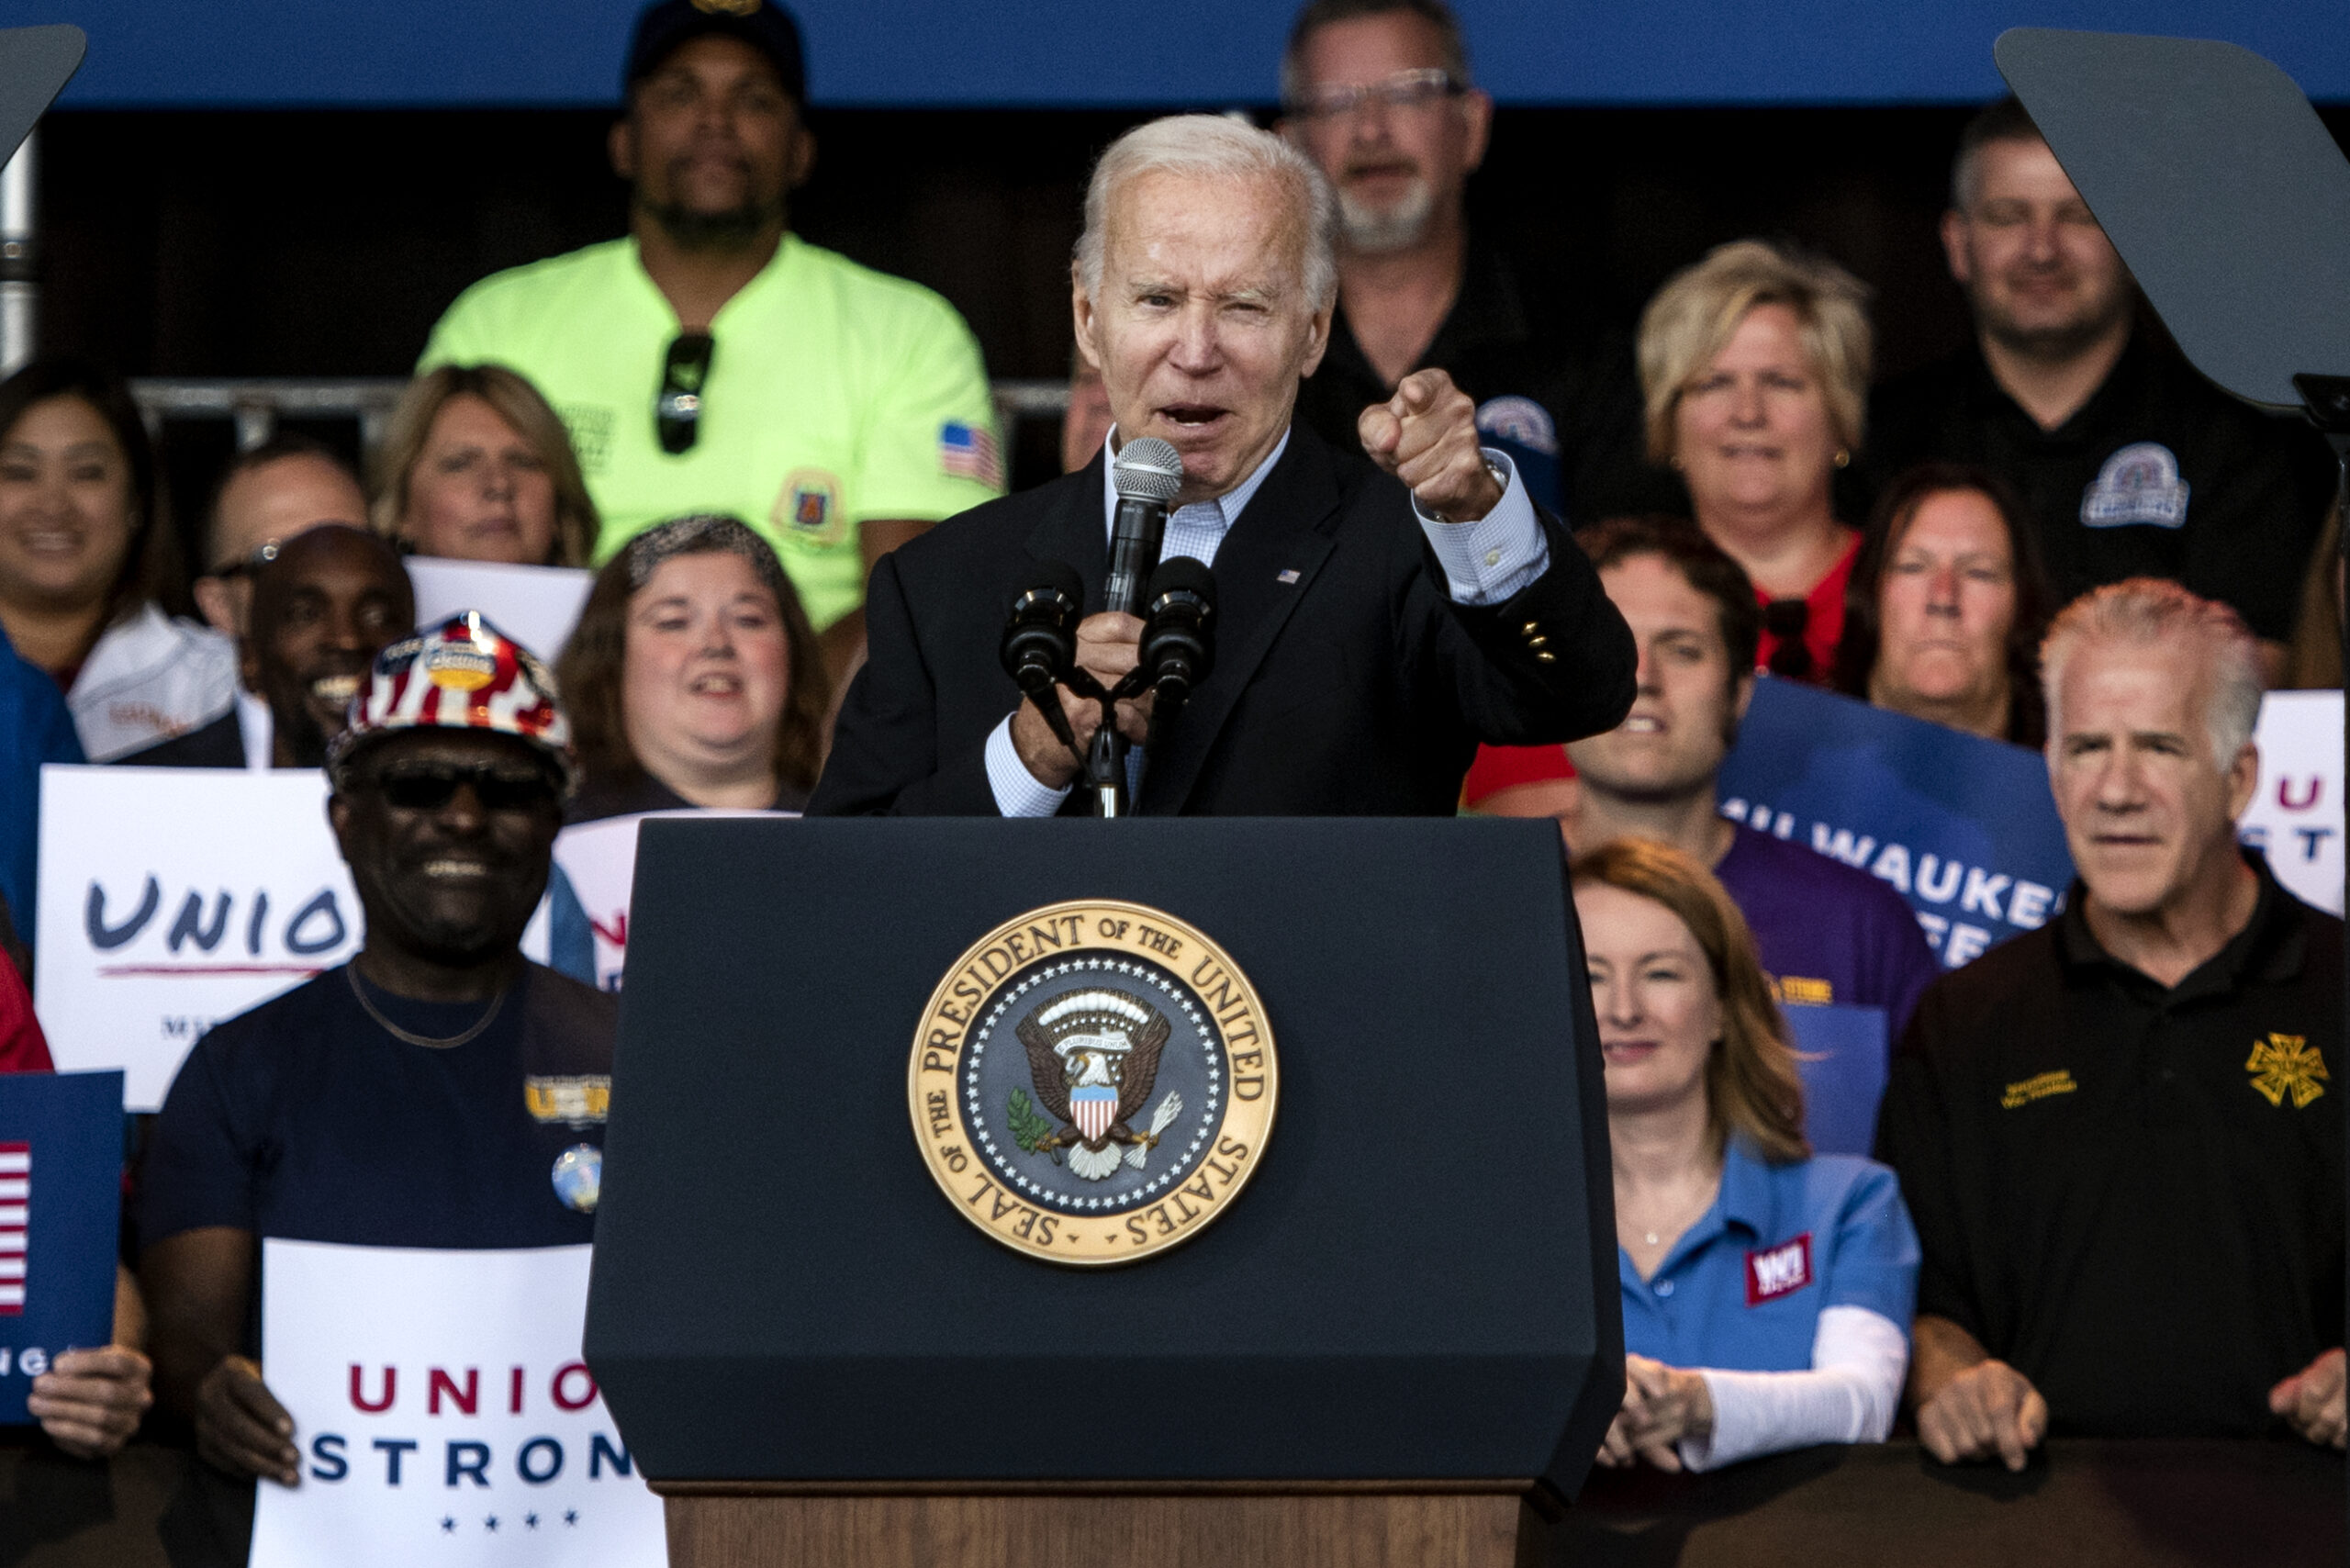 In Milwaukee visit, Biden praises labor unions, rails against ‘MAGA Republicans’